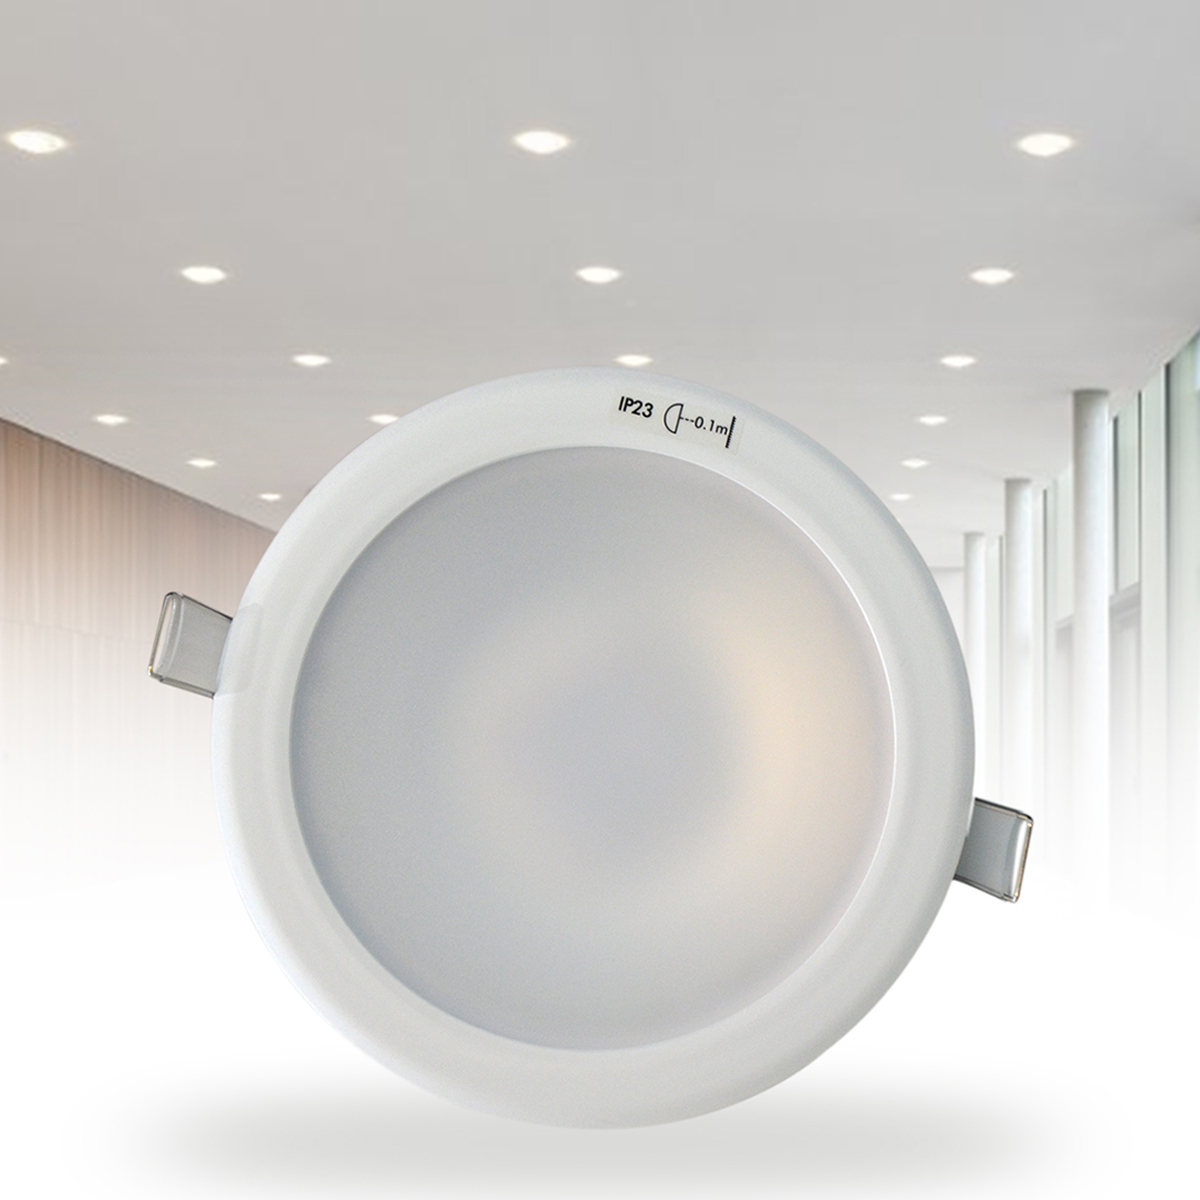  LED Downlight F55500RC/WH26 12W 6500K مصباح من شركة ميجامان - موفرة للطاقة  أبيض ساطع 